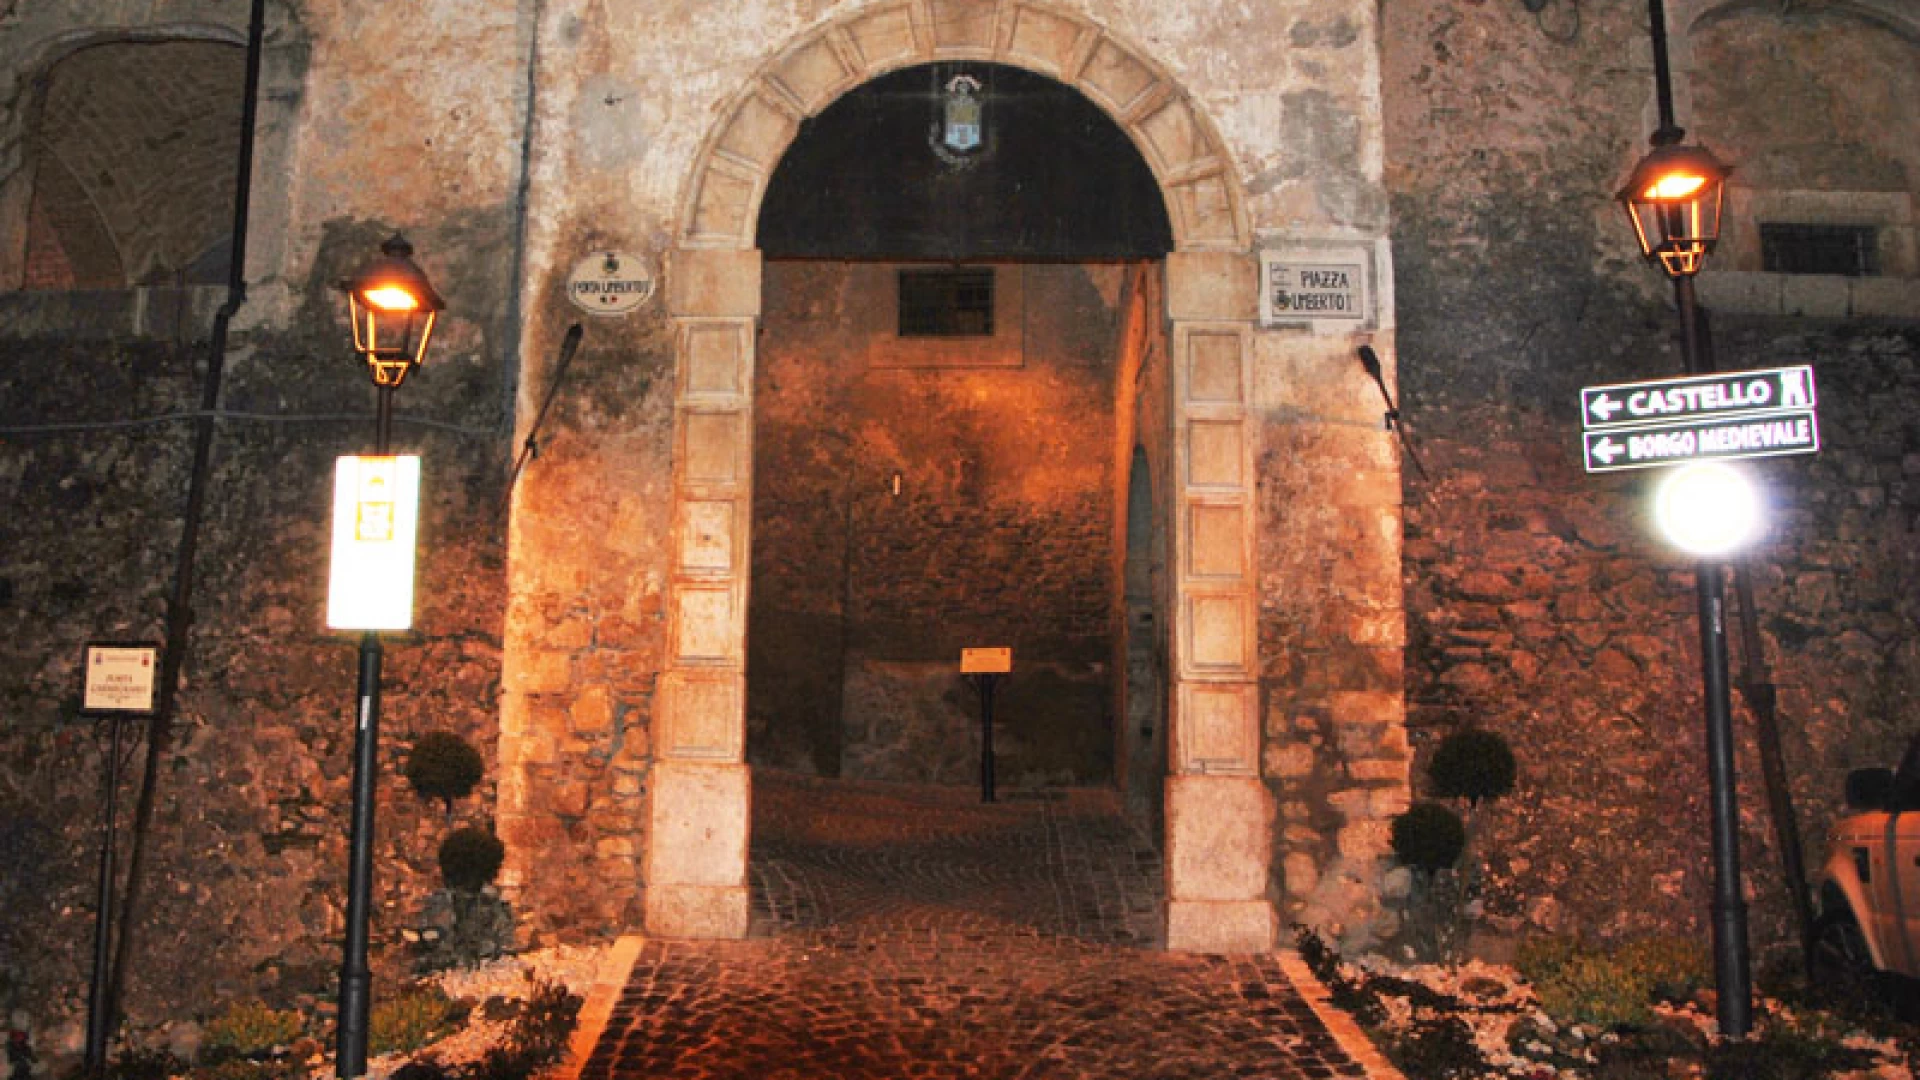 Fornelli: fiera di San Raffaele, il paese rivive gli antichi fasti commerciali del passato.